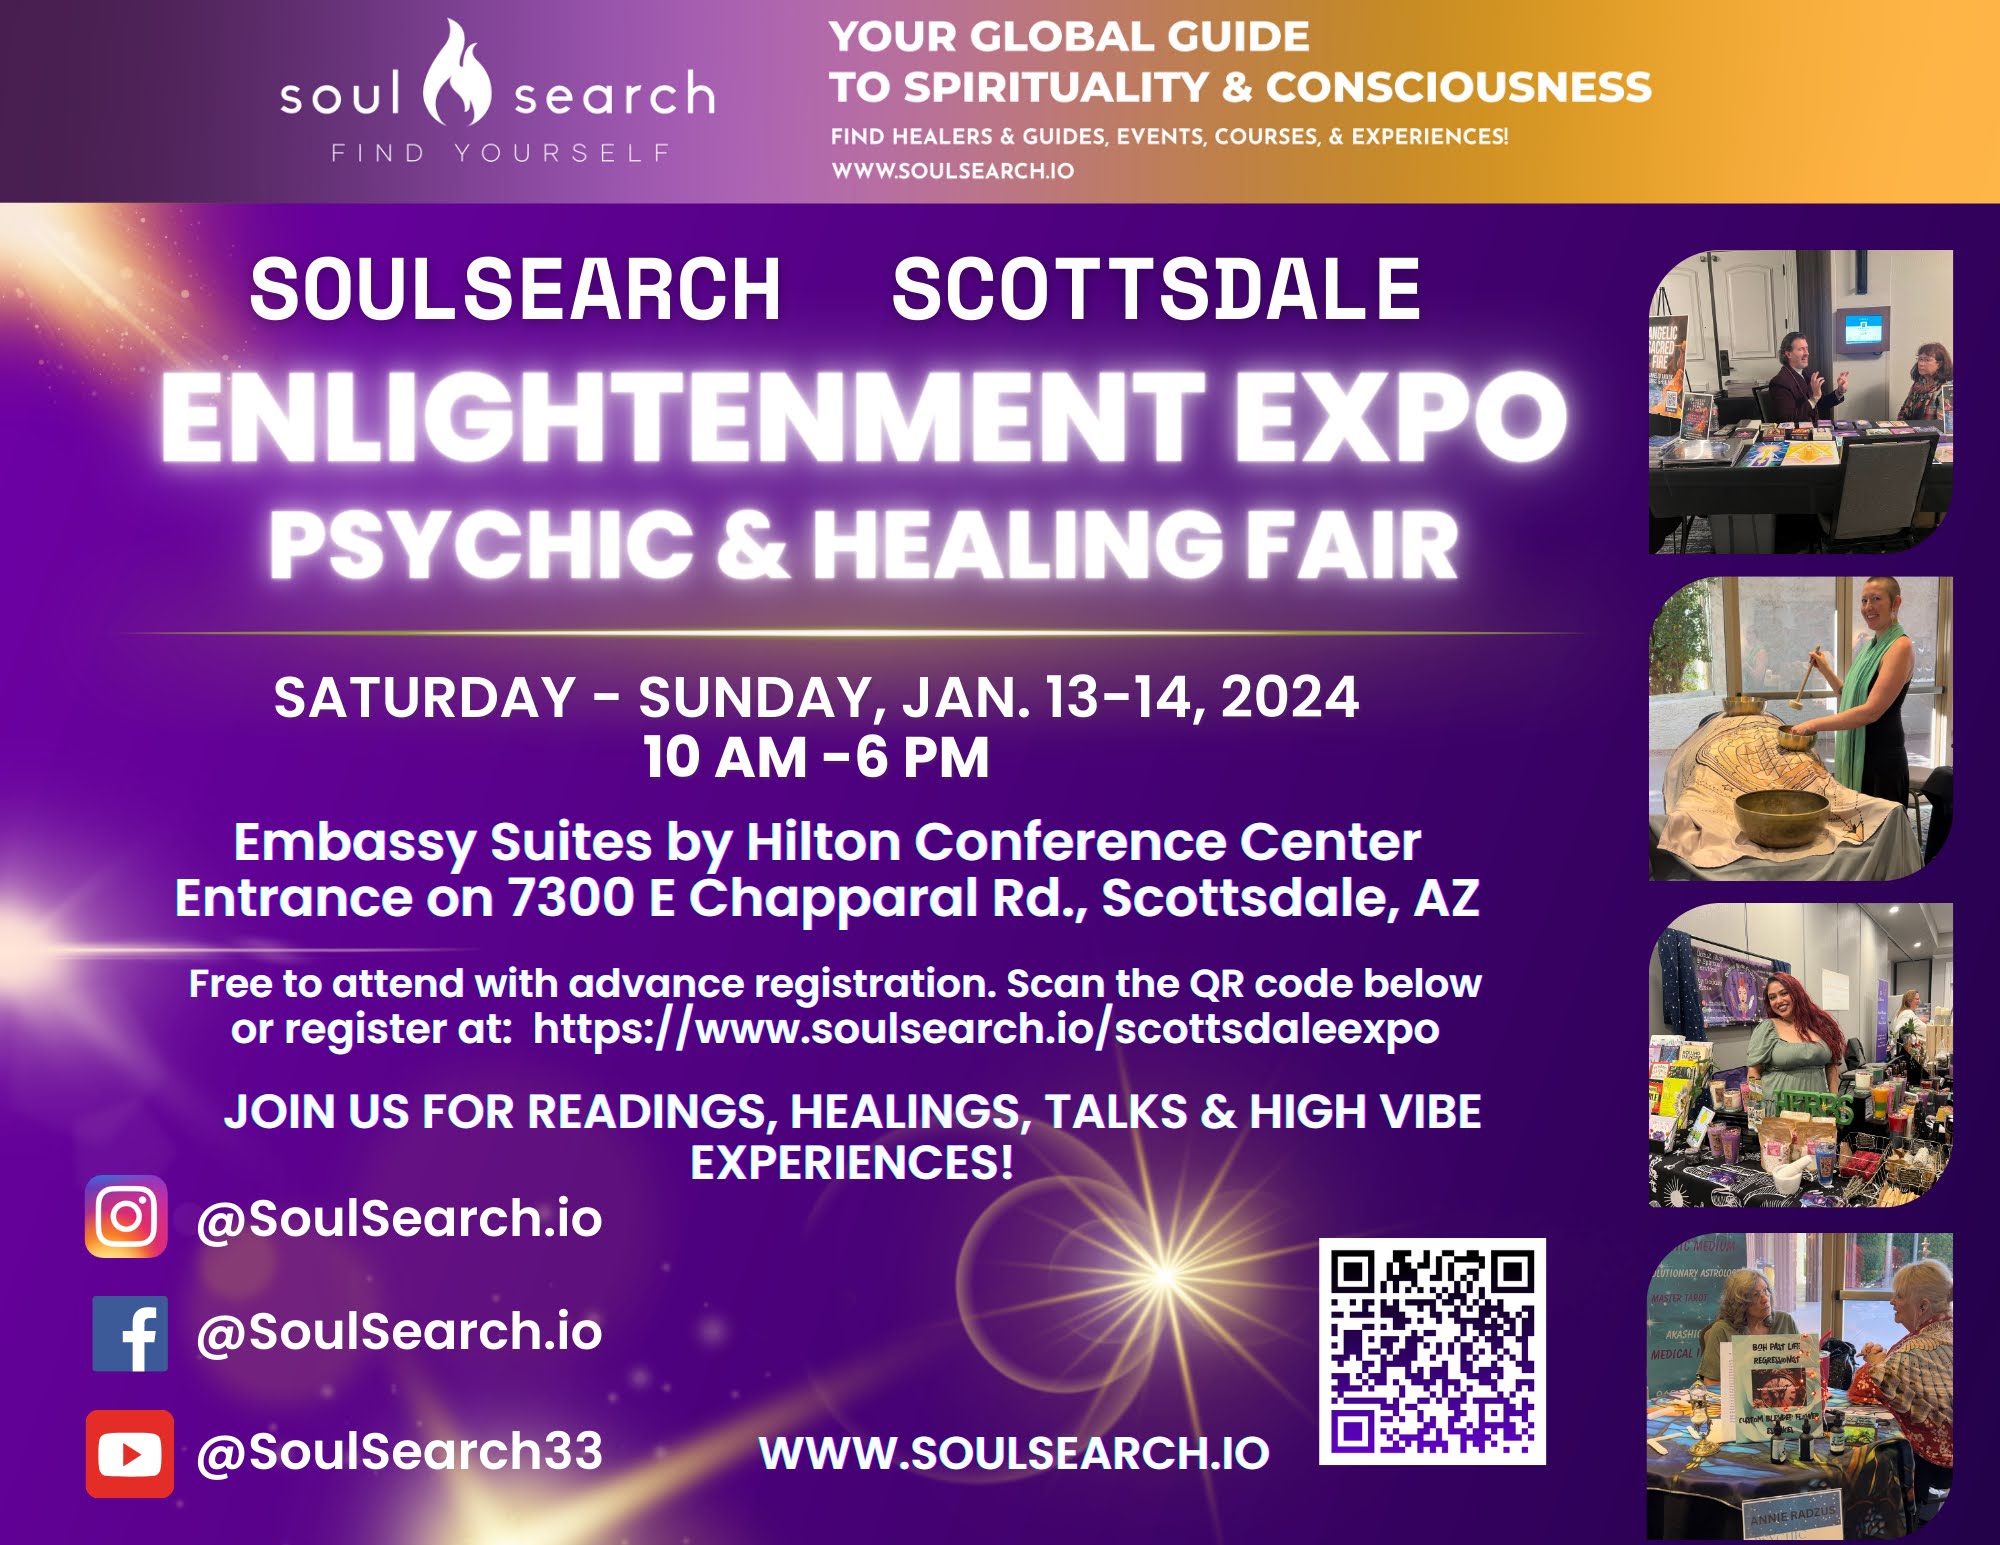 https://www.soulsearch.io/scottsdalepsychicfair